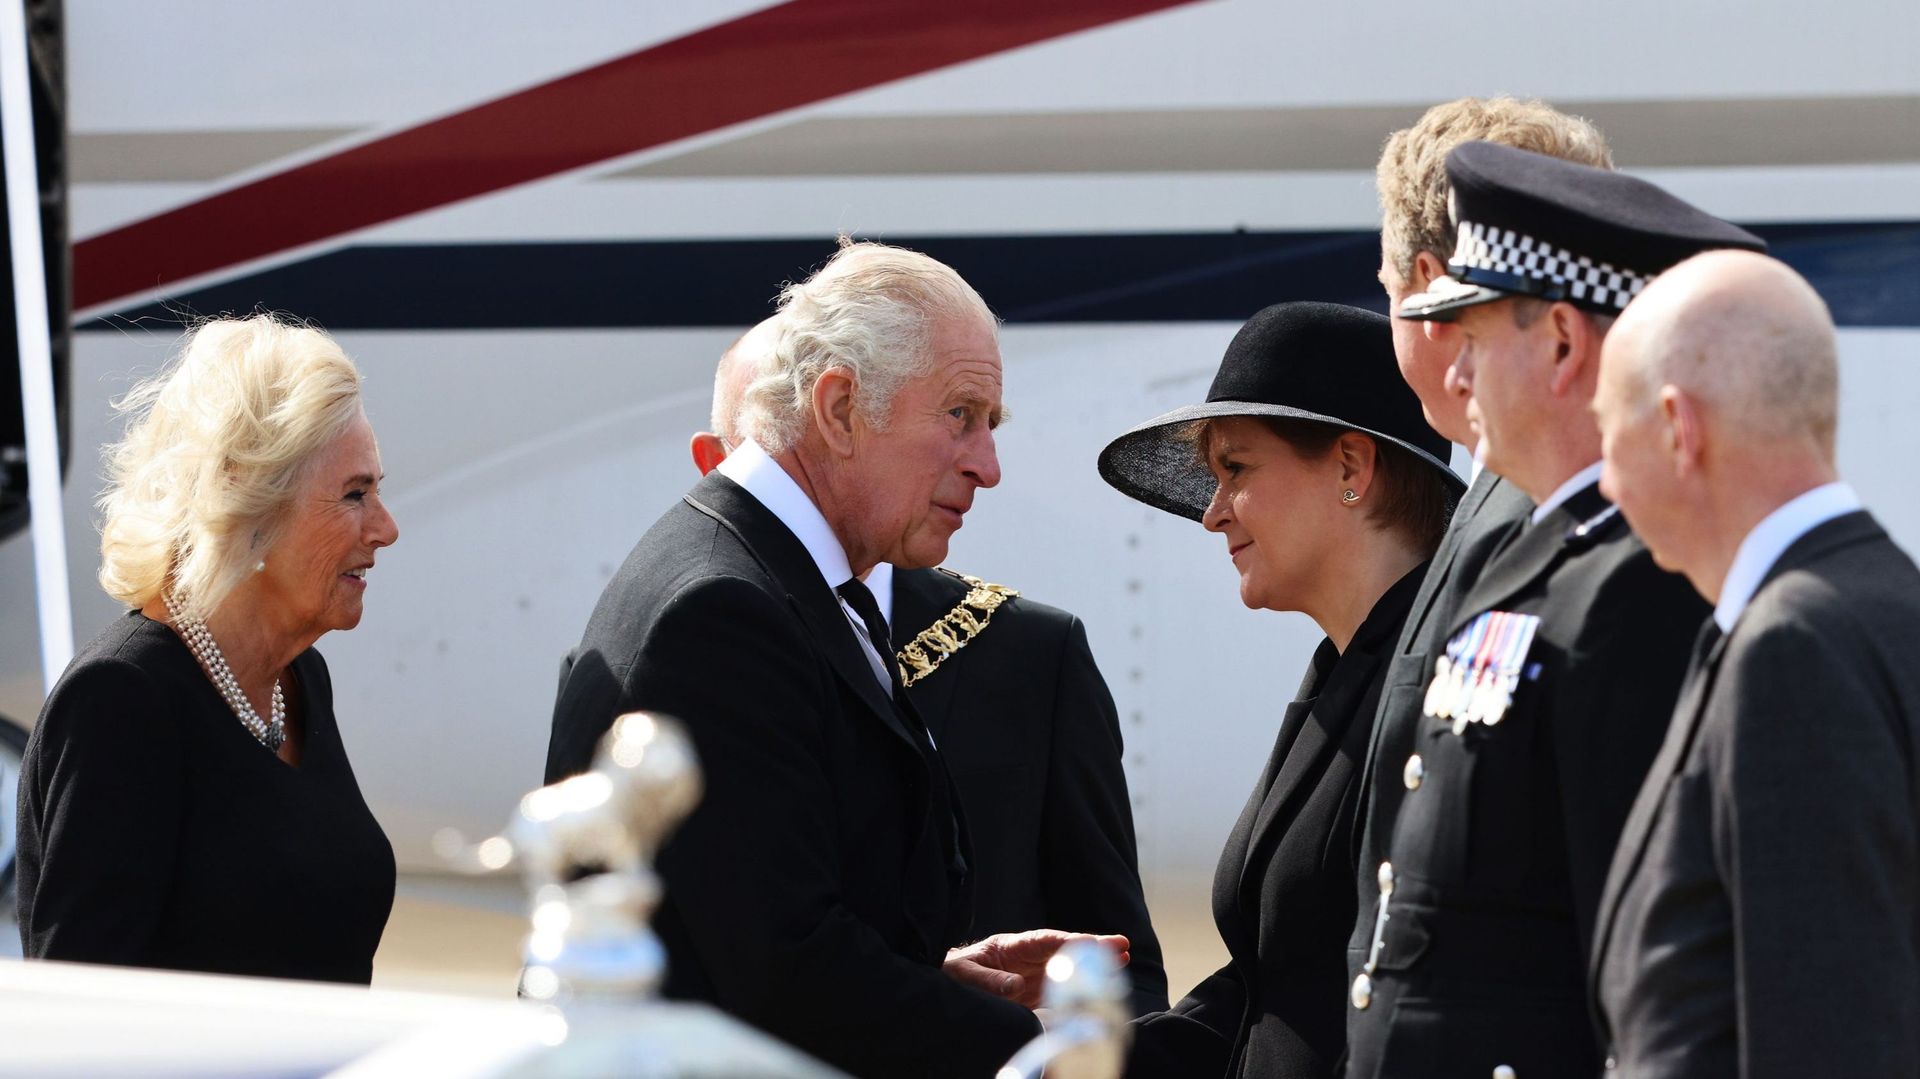 Le roi Charles III et la reine consort accueillis par la Première ministre Nicola Sturgeon à leur arrivée en Ecosse.